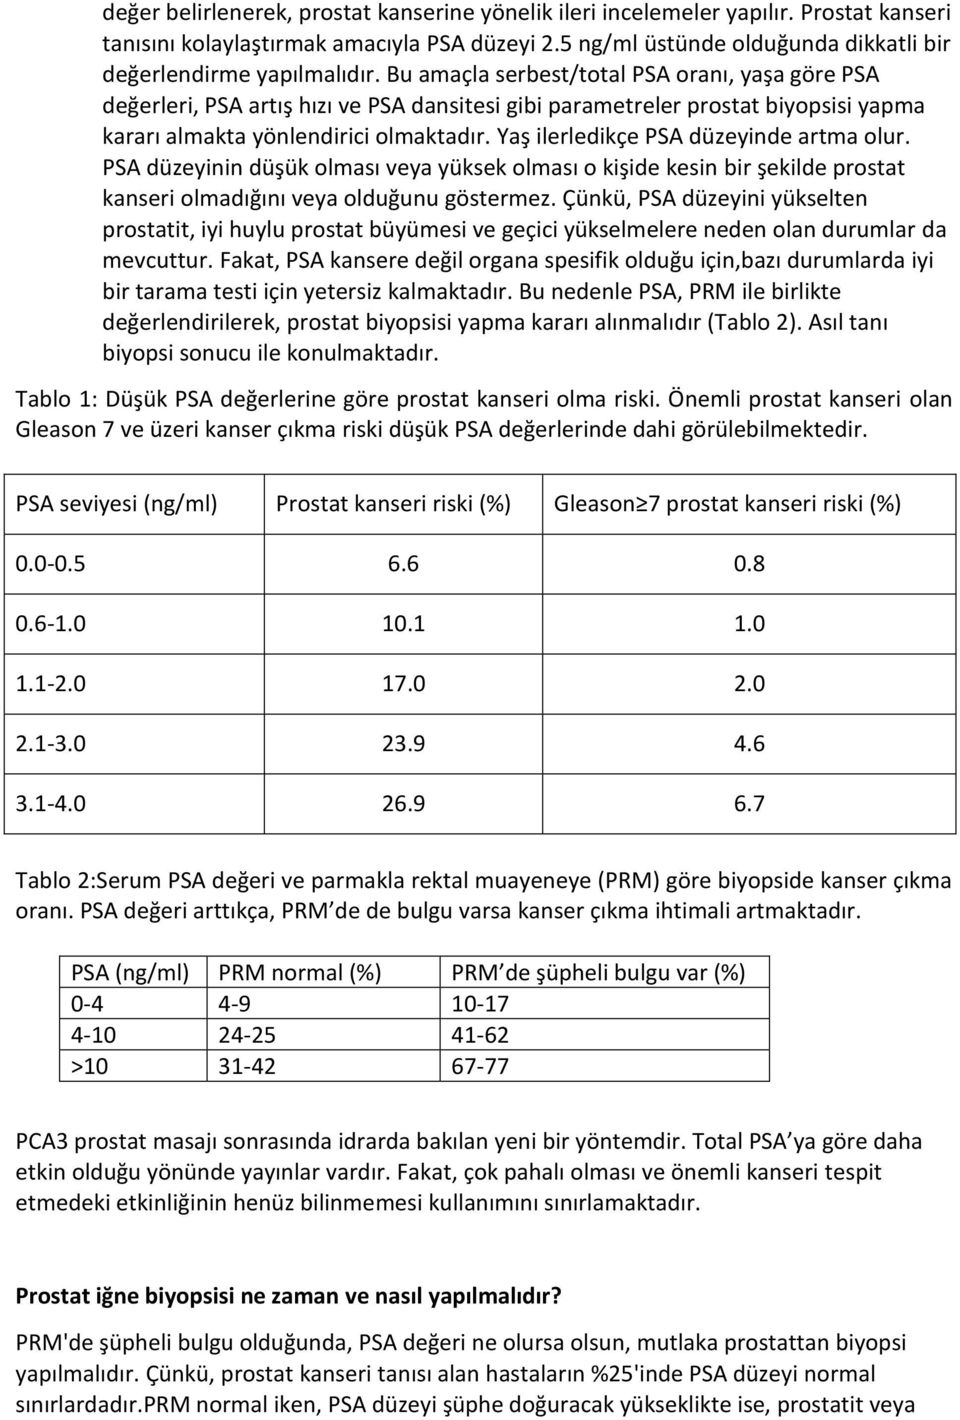 Bu amaçla serbest/total PSA oranı, yaşa göre PSA değerleri, PSA artış hızı ve PSA dansitesi gibi parametreler prostat biyopsisi yapma kararı almakta yönlendirici olmaktadır.